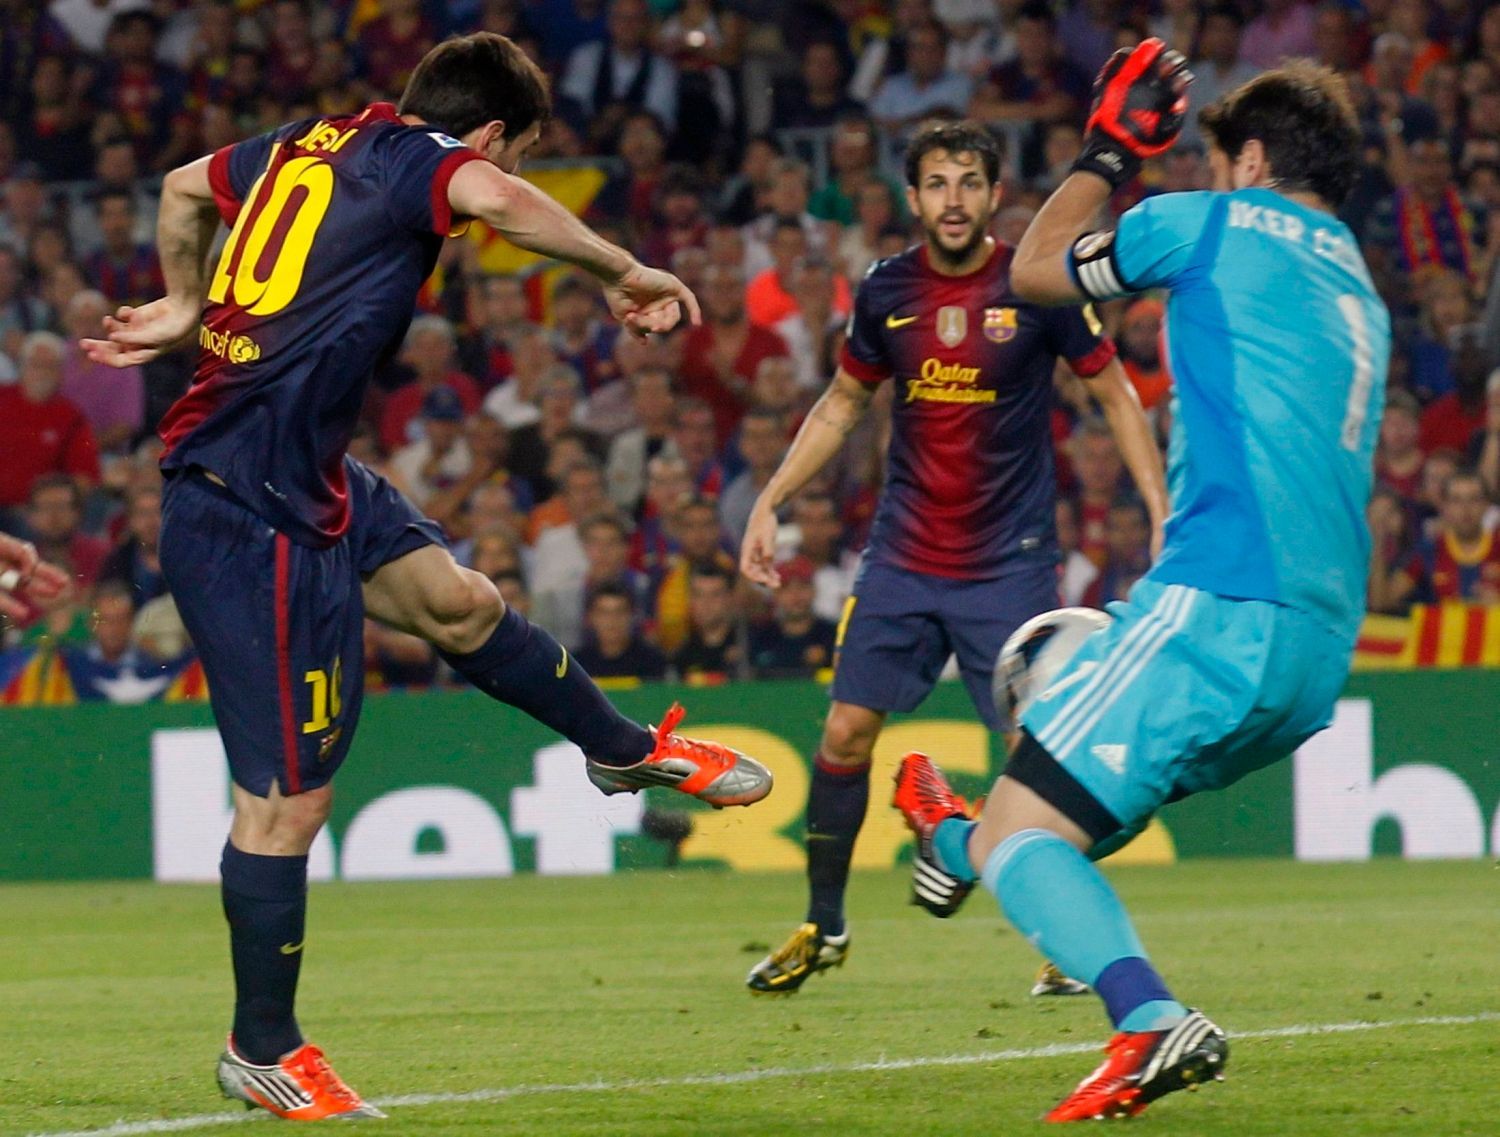 Fotbalista Barcelony Lionel Messi střílí gól za záda Ikera Casillase v utkání Primera División proti Realu Madrid.